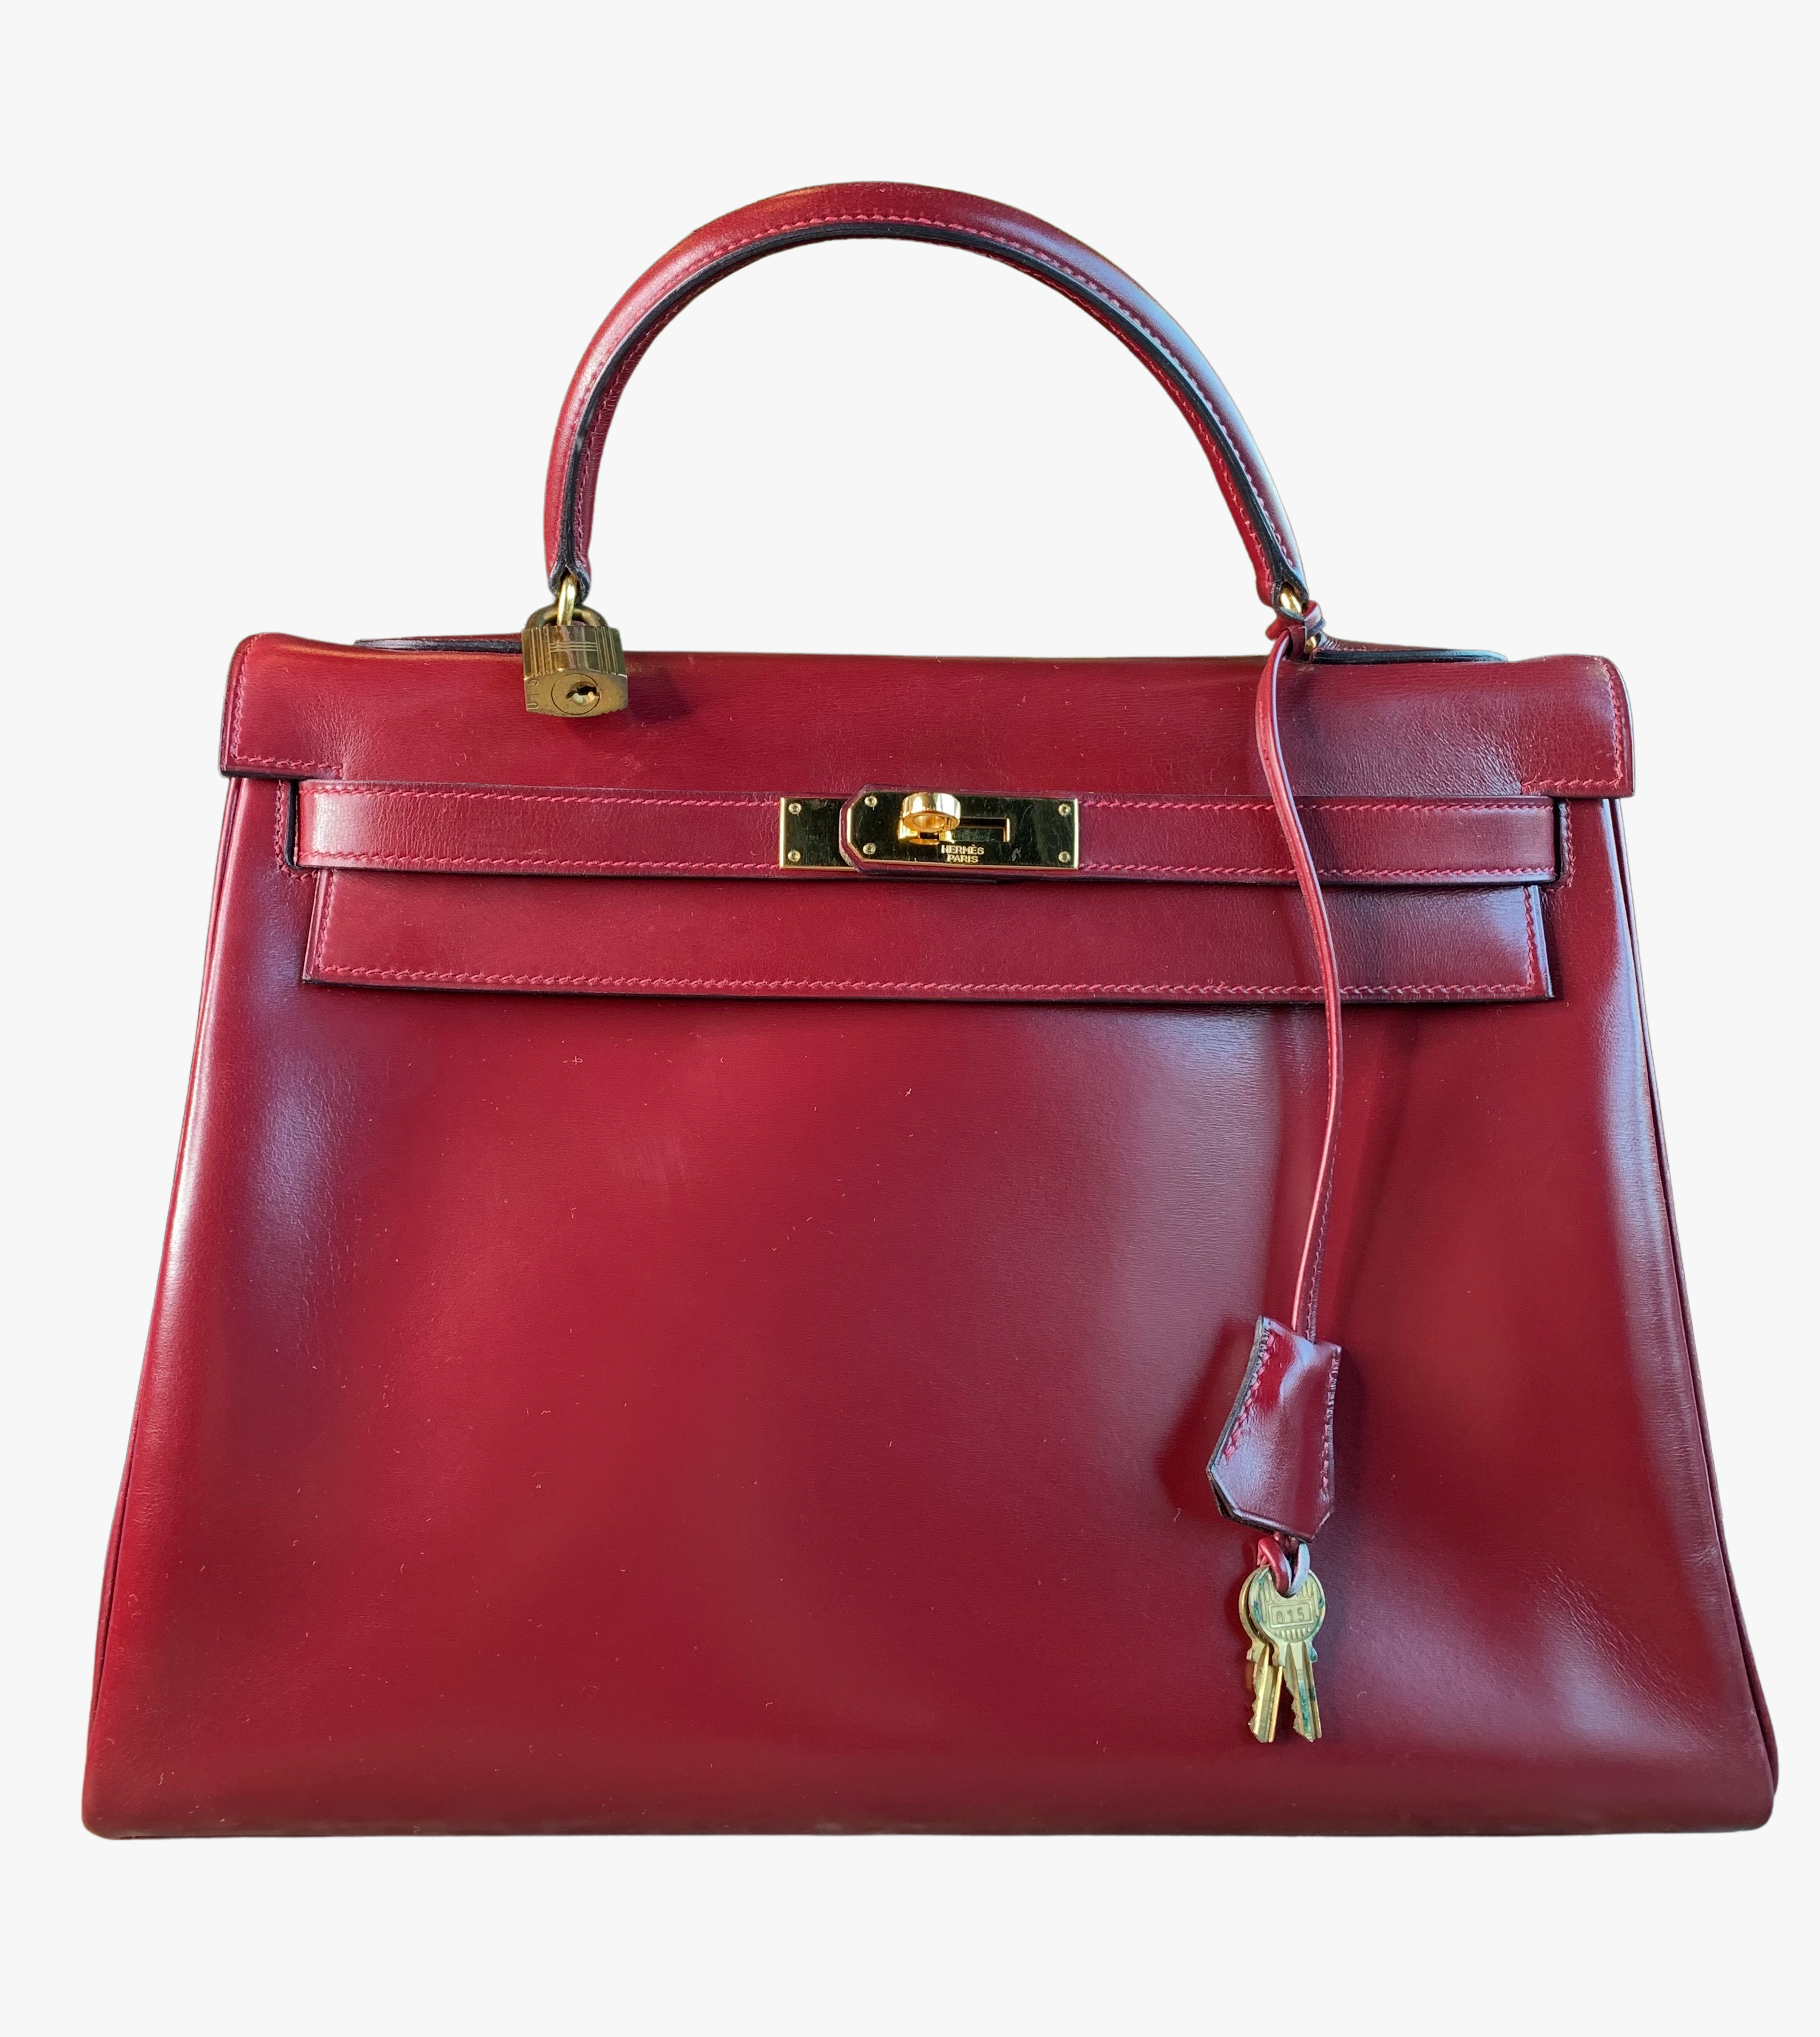 Vintage Hermes Kelly Bag In Burgundy Box Leather, 1976-